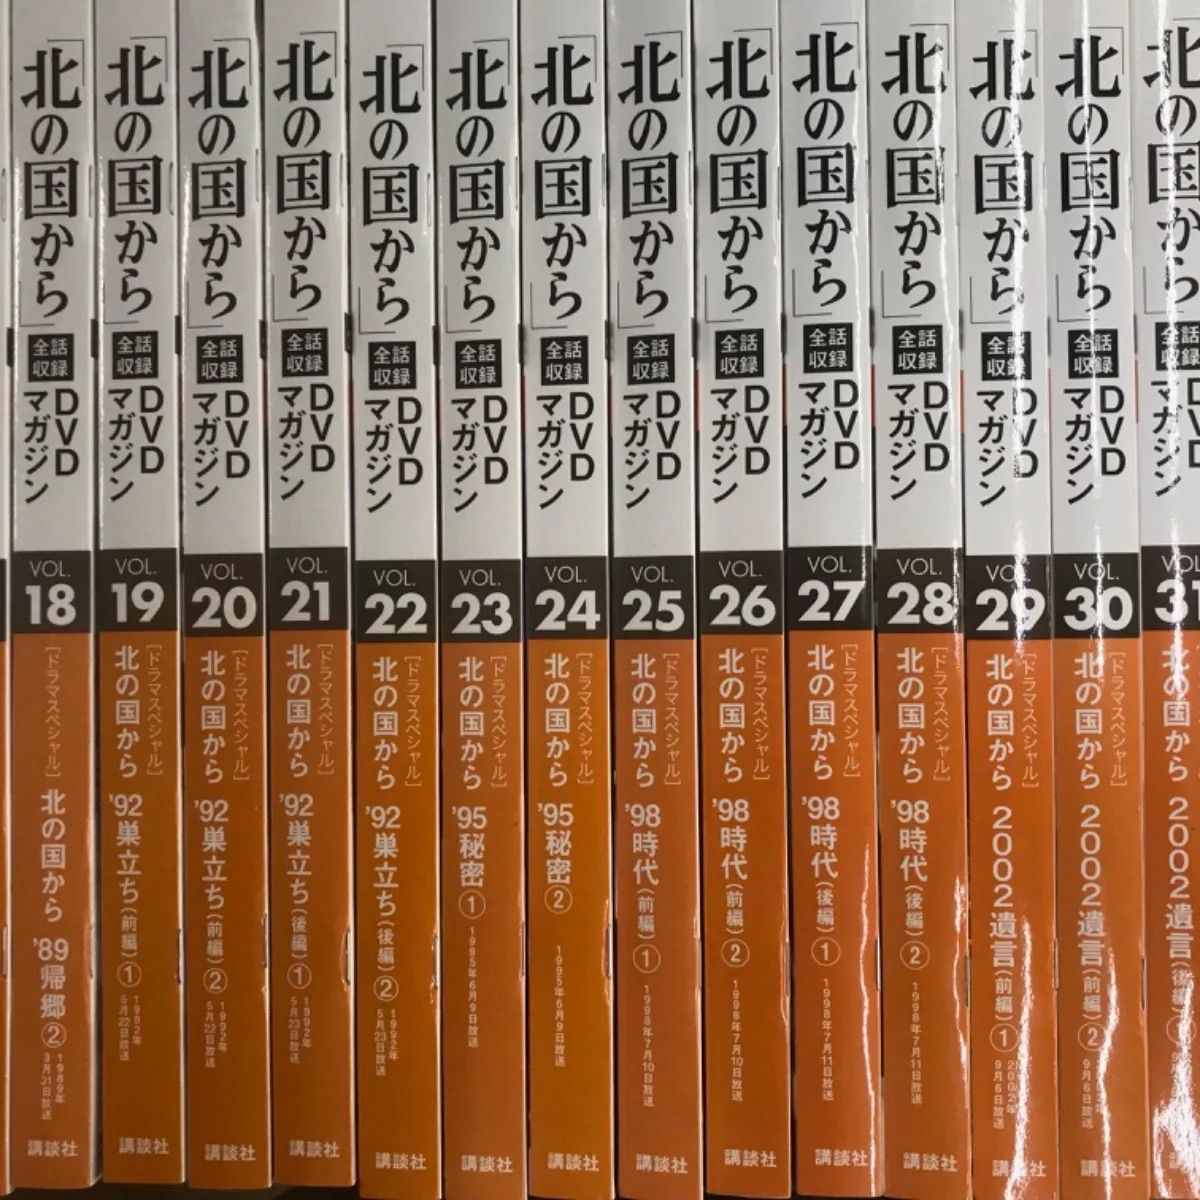 北の国から 全話収録講談社 DVDマガジン 全32巻セット - TVドラマ